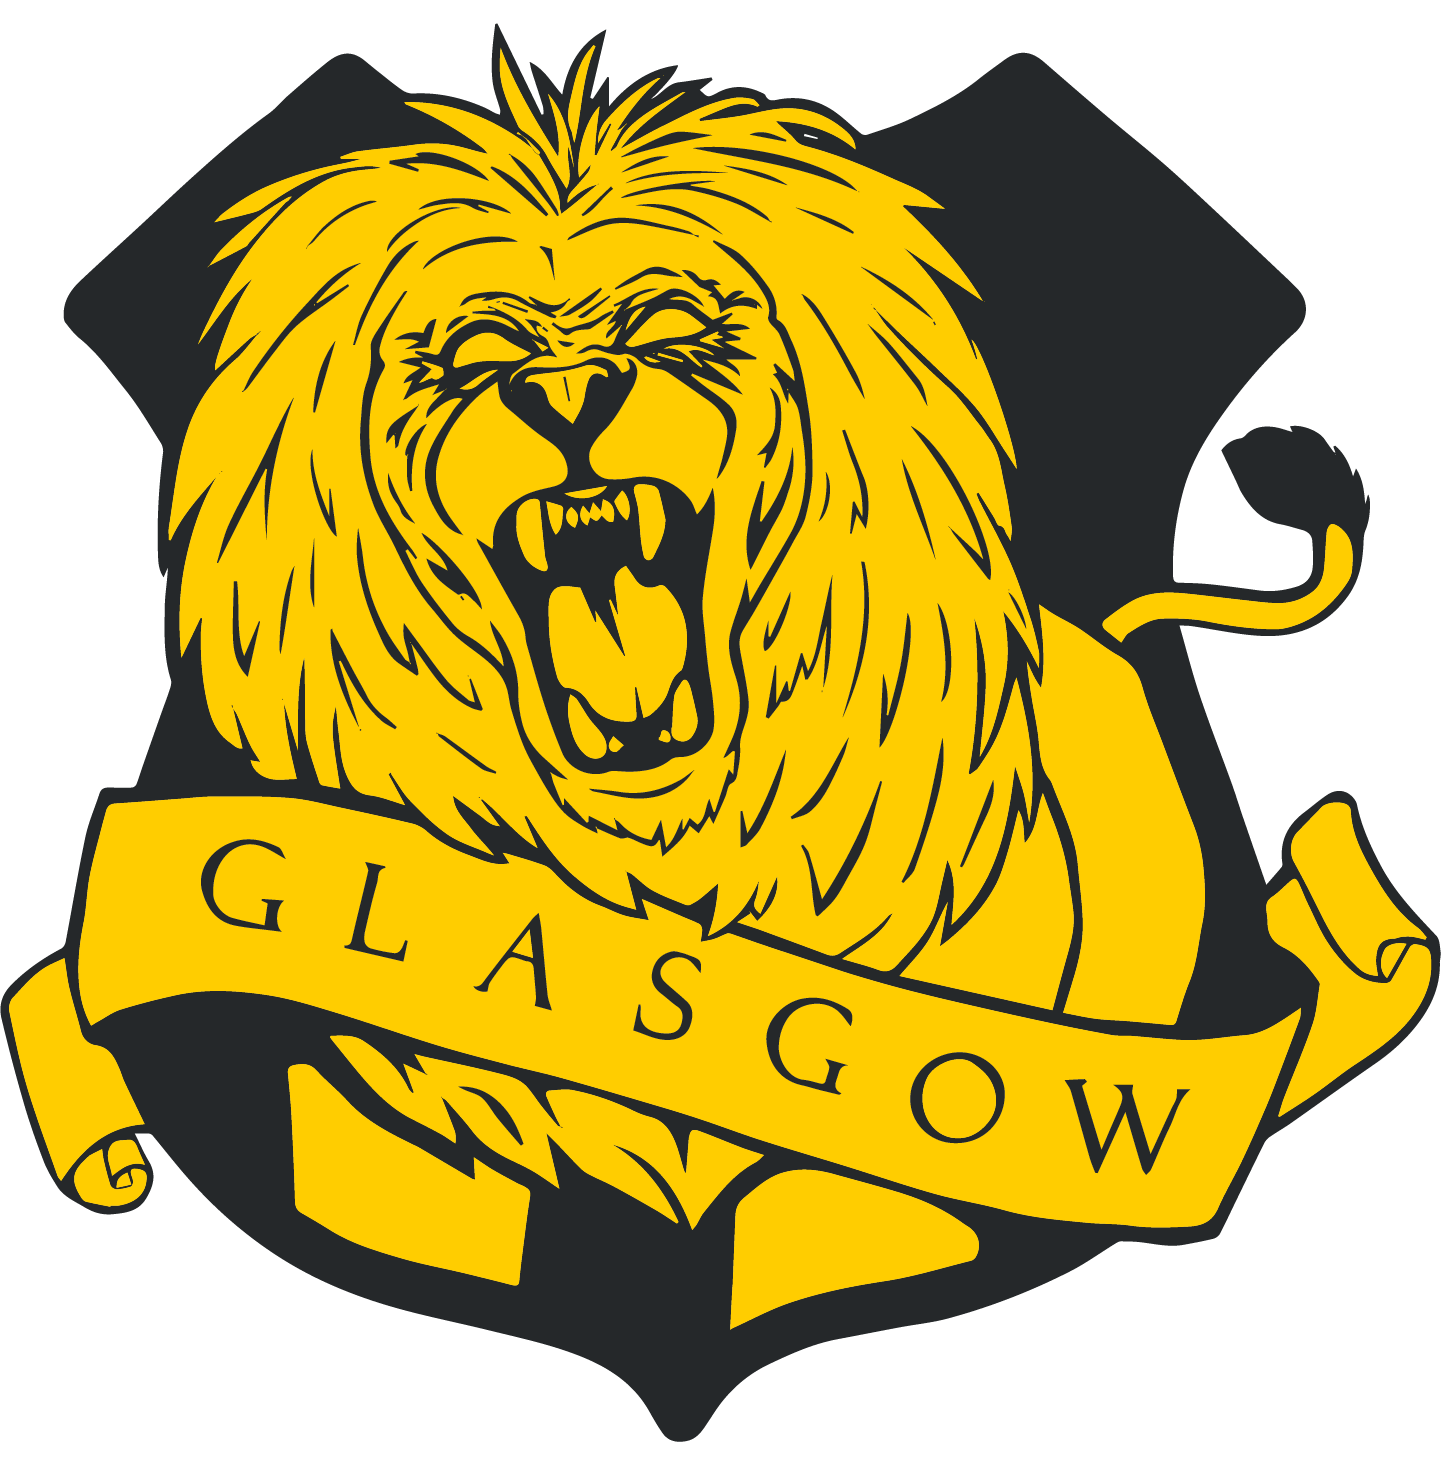 Glasgow emblem